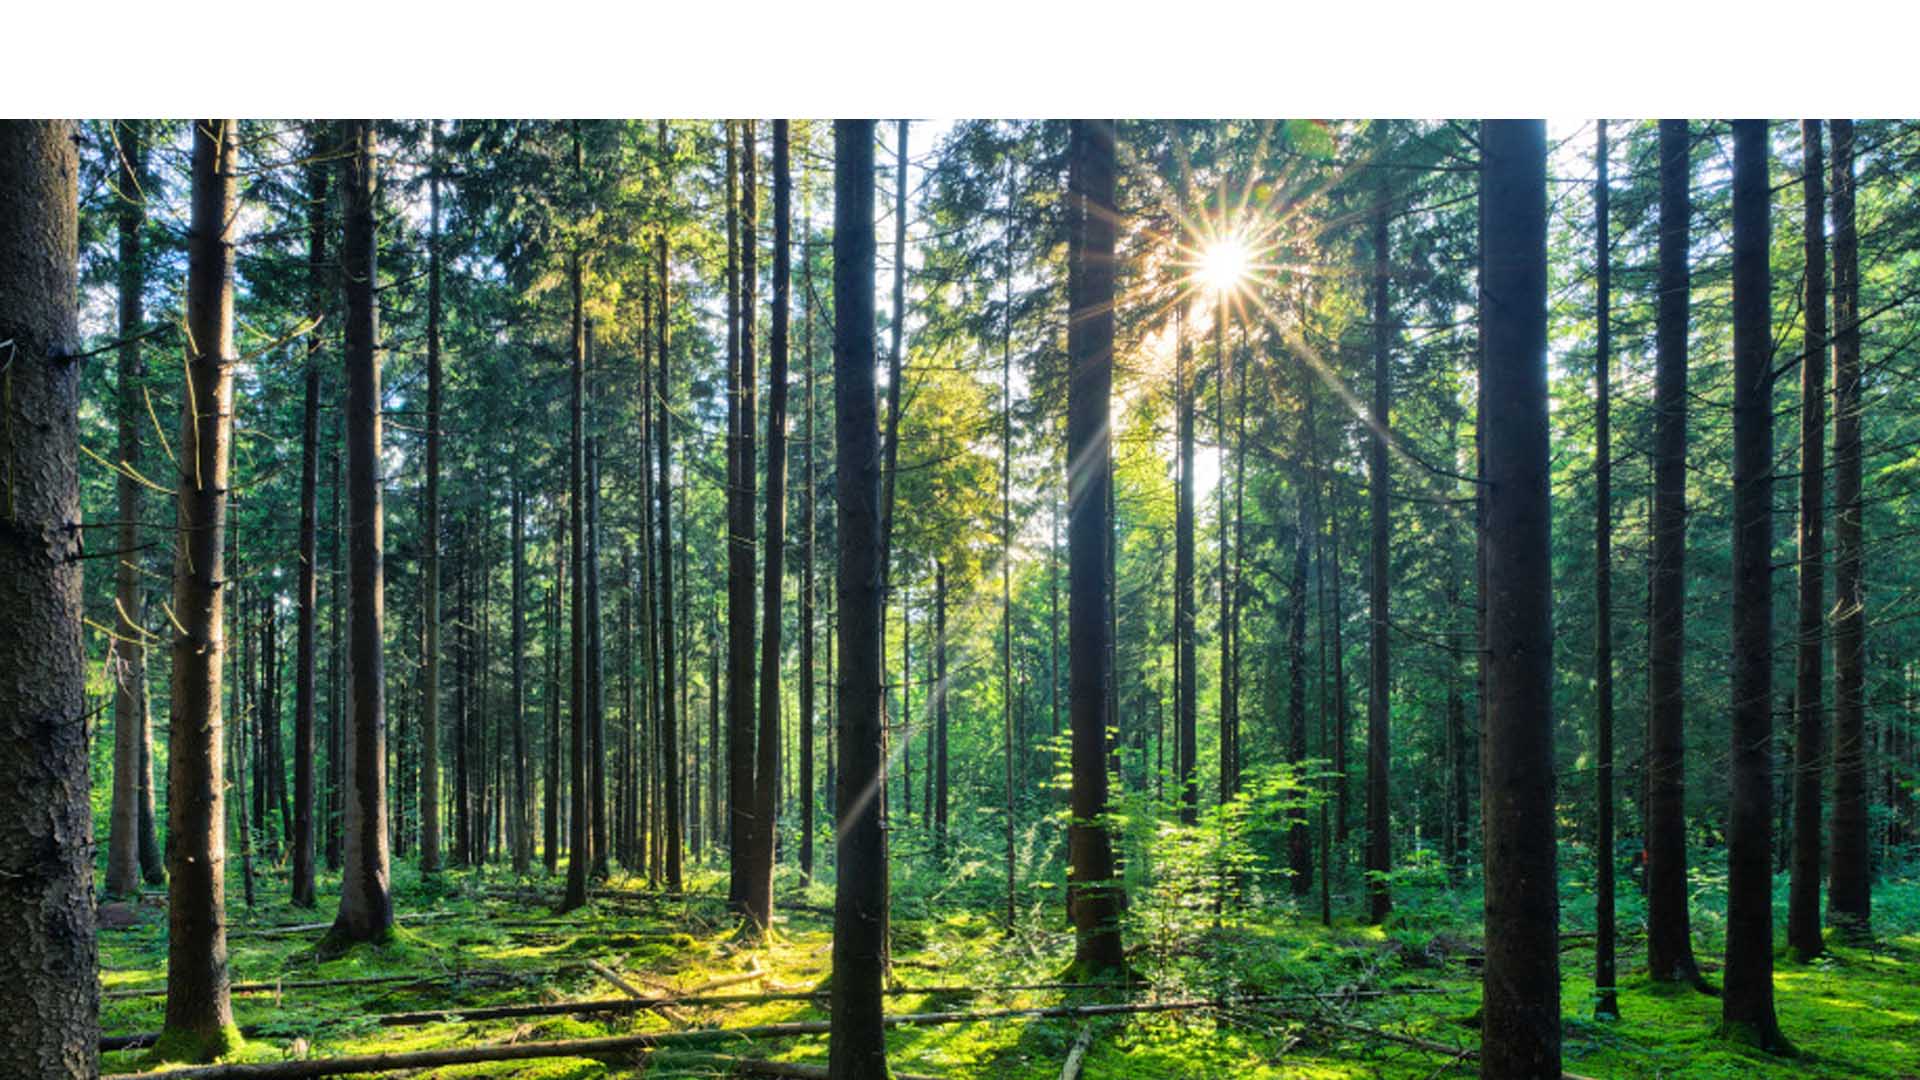 Eva Muller, directora forestal de la agencia dijo que es posible crear de sistemas agrícolas más sostenibles que no afecten las zonas tropicales y subtropicales